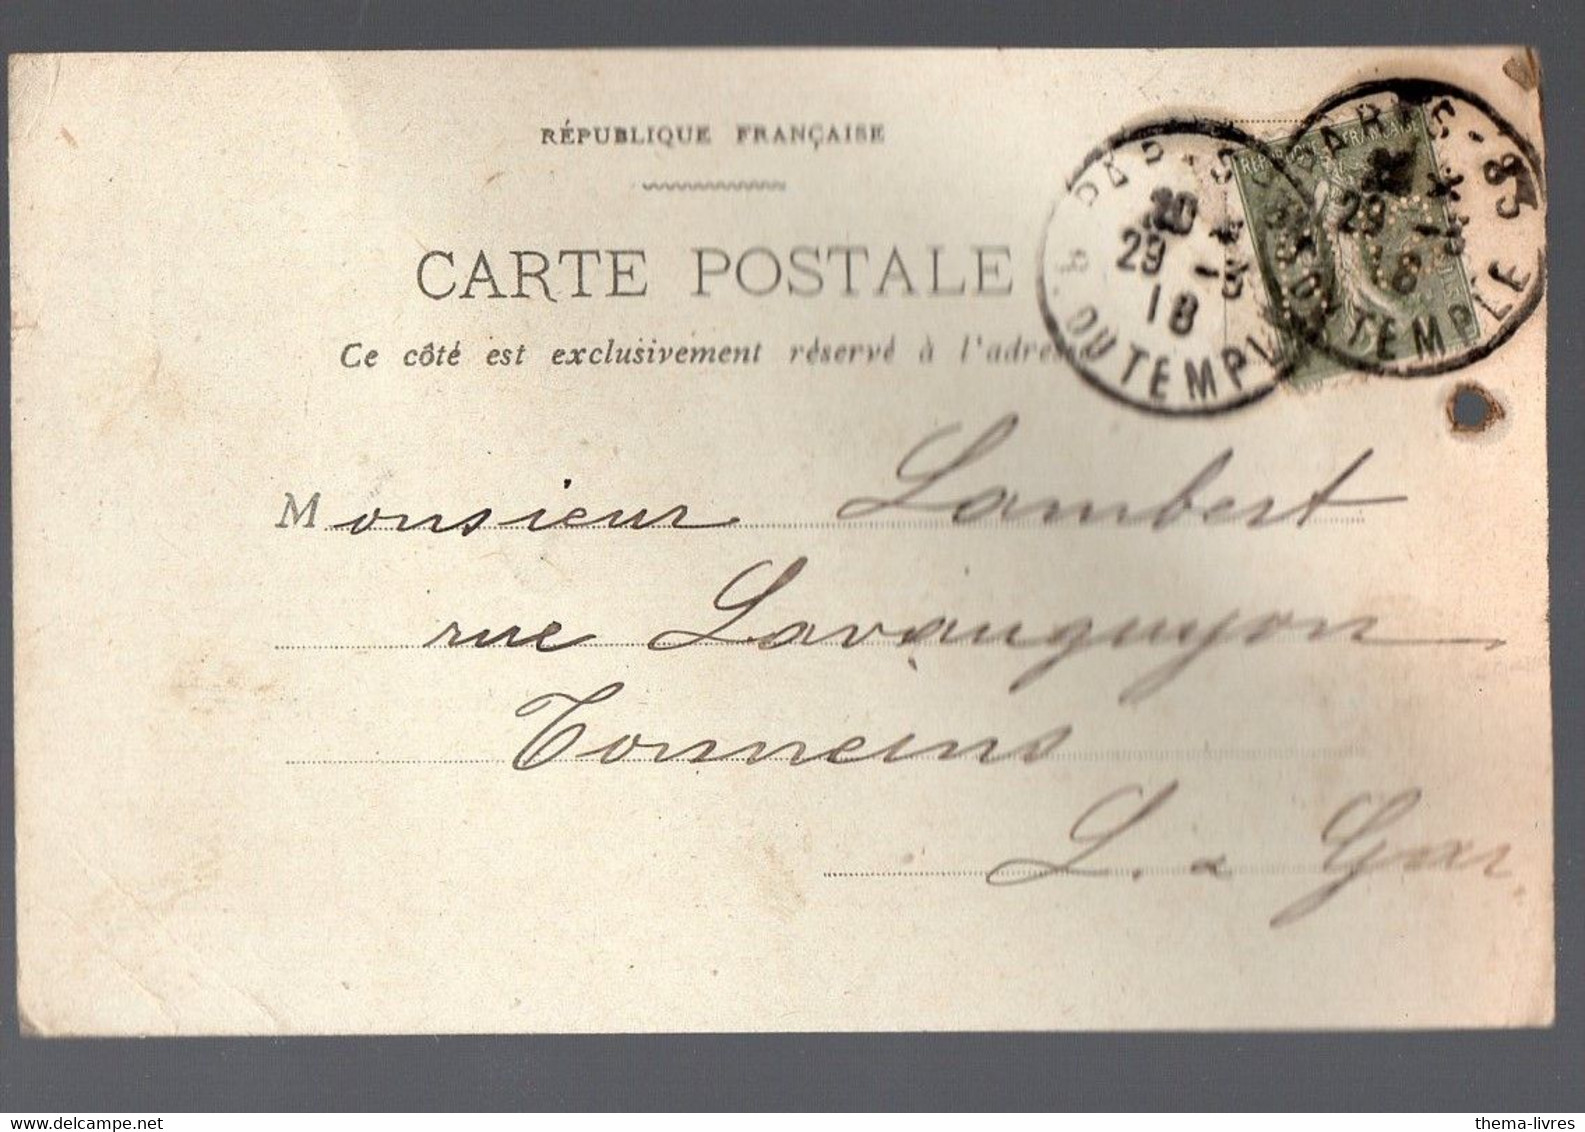 Paris Carte De Correspondance Commerciale  SIEGEL ET AUGUSTIN (gainerie) Avec Timbre Perforé VNS 1918 (PPP38298) - Covers & Documents